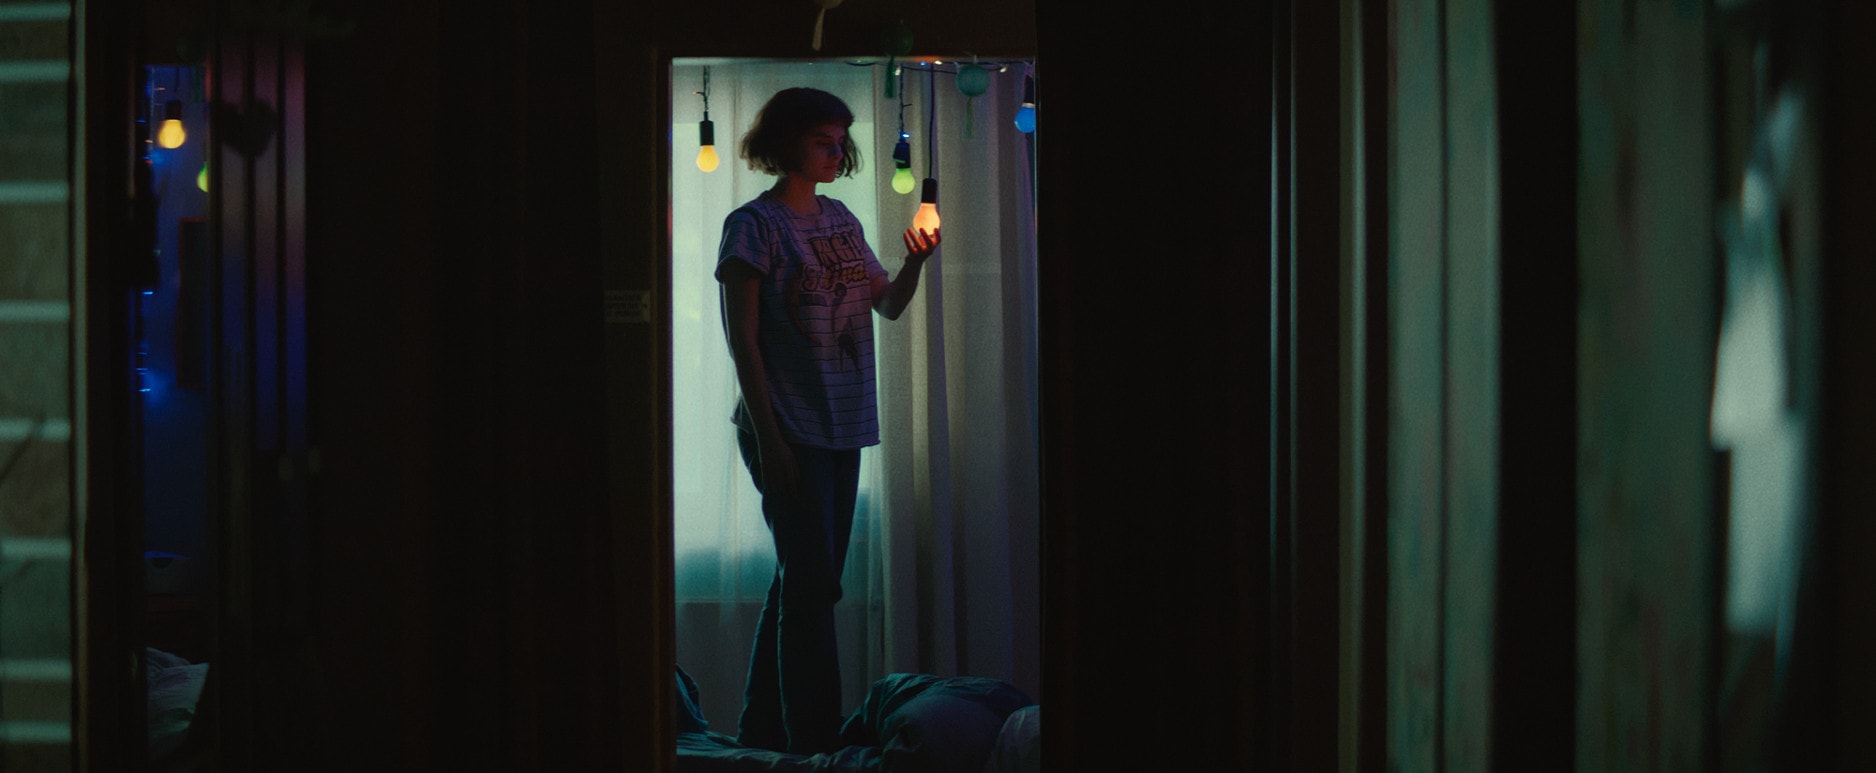 Jeanne (Noémie Merlant) dans sa chambre avec ses bricolages et lumières.